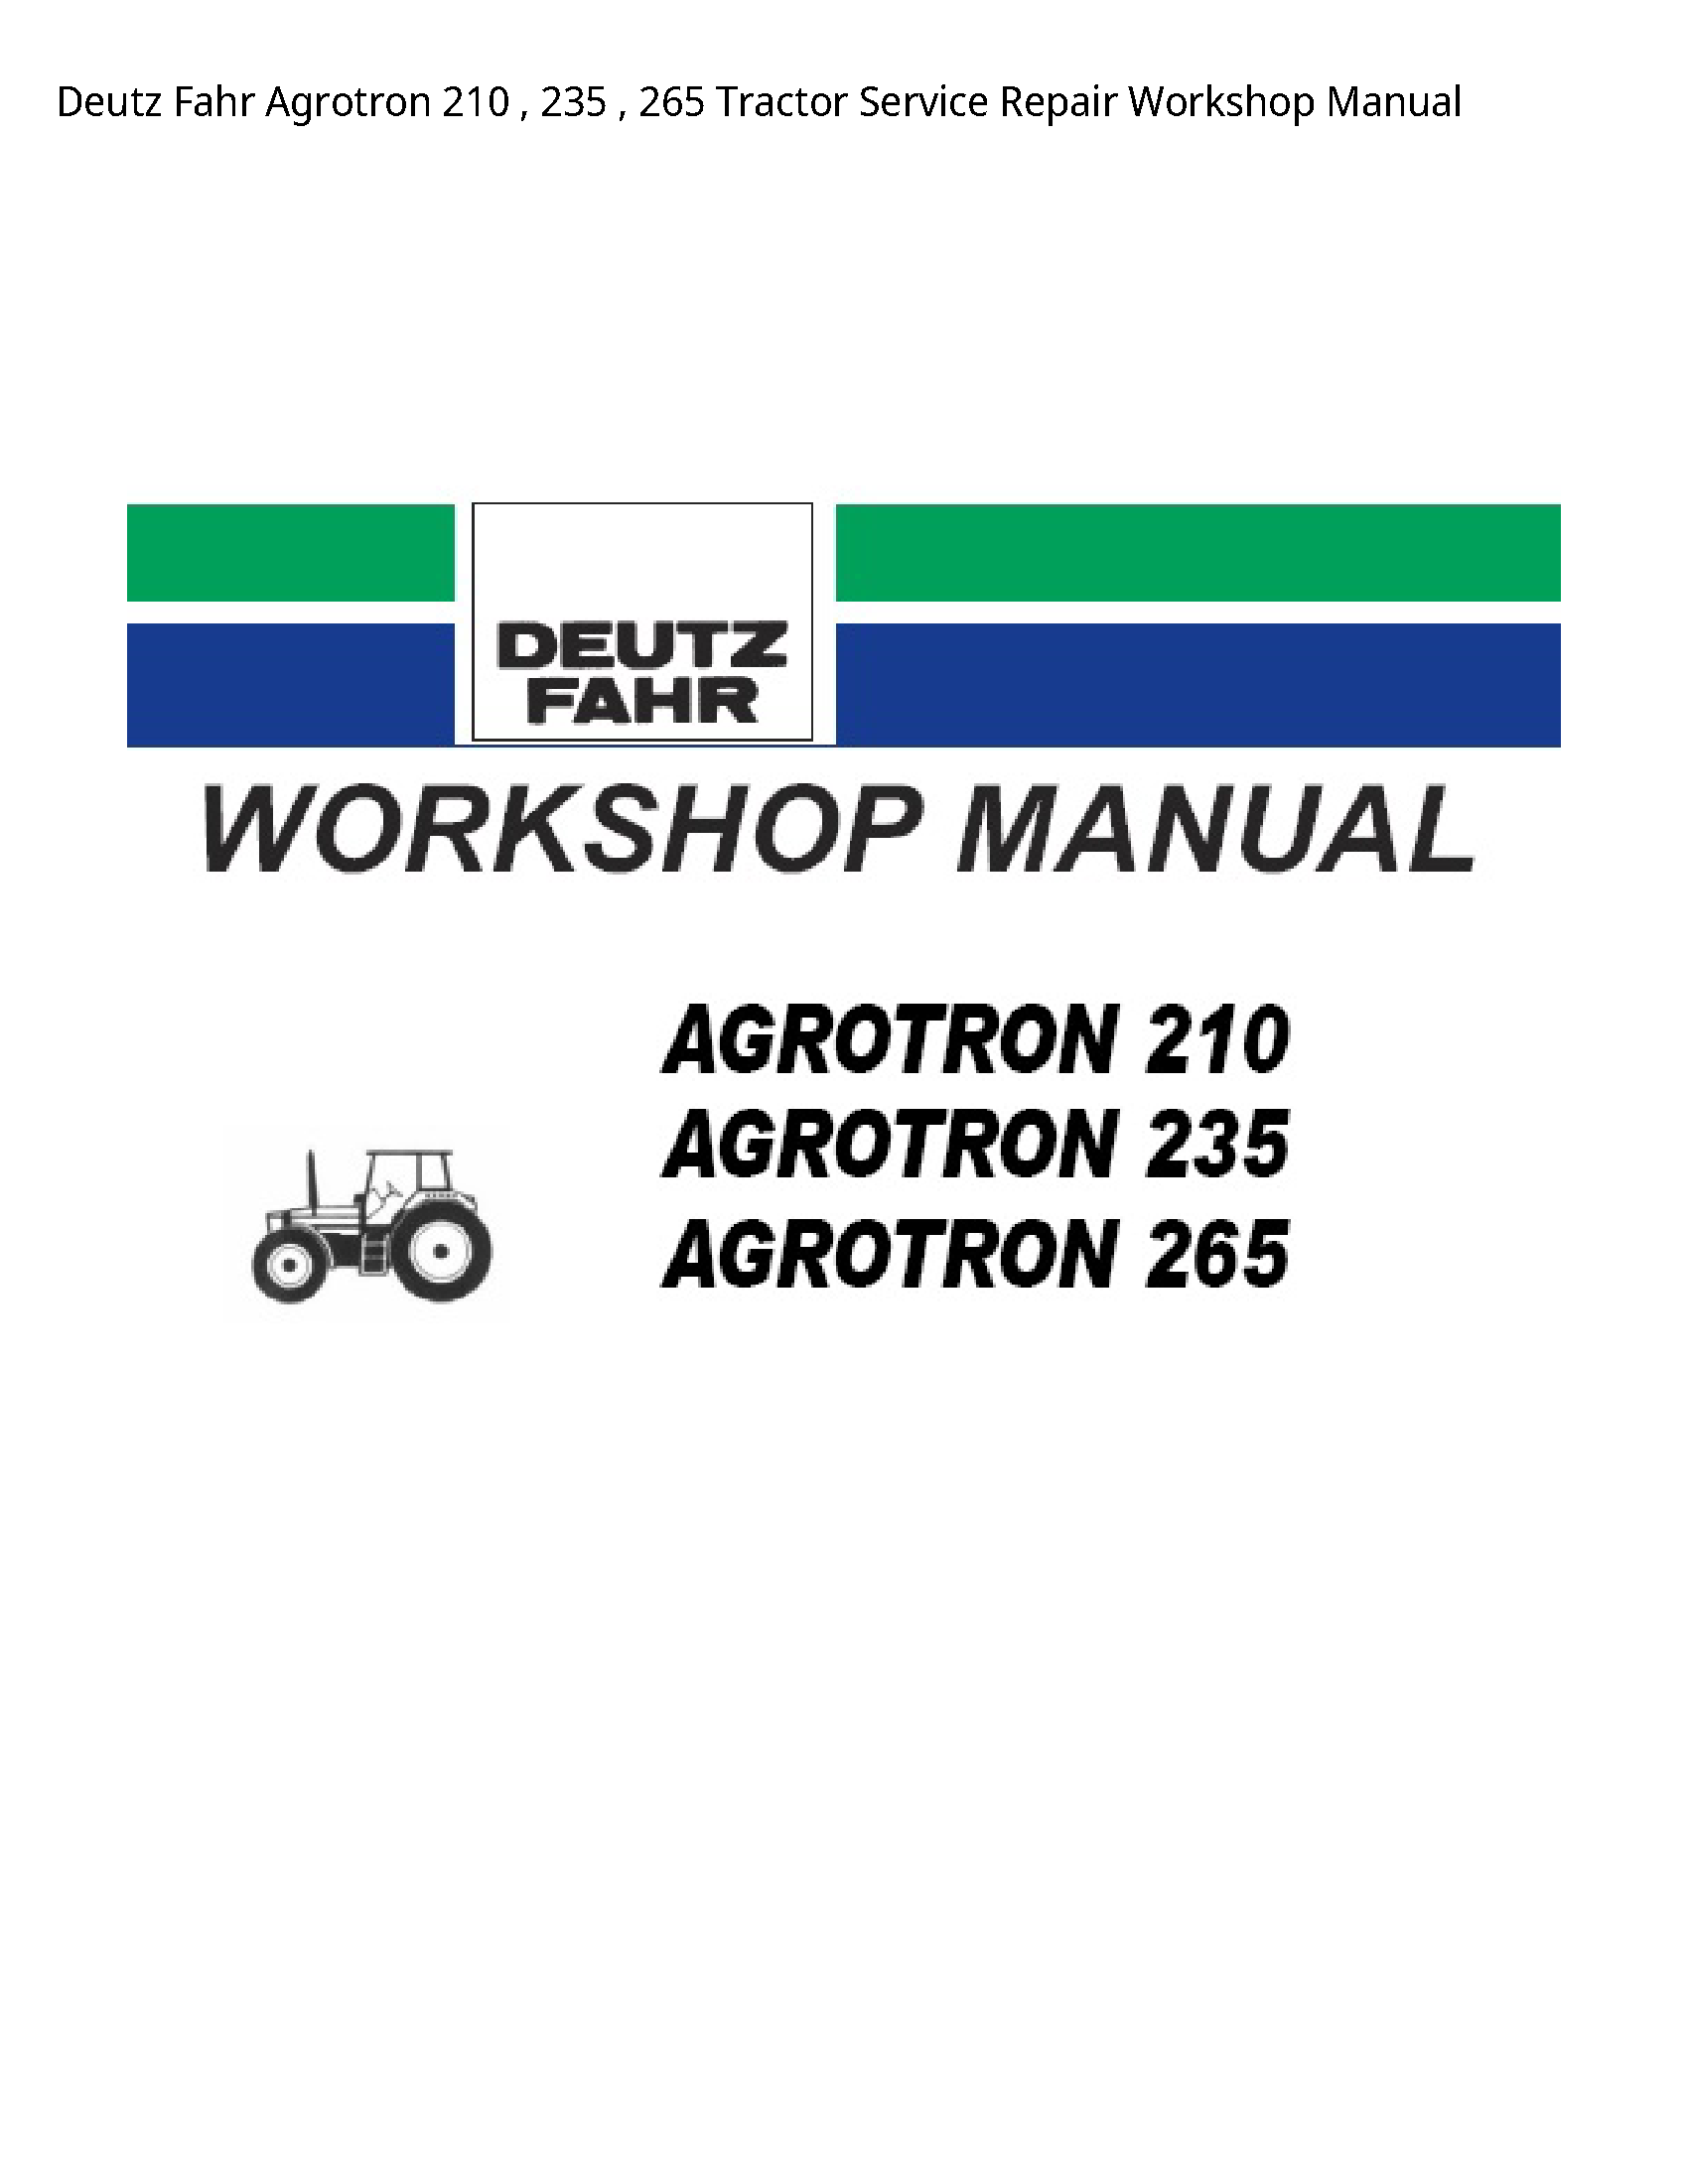 Deutz 210 Fahr Agrotron Tractor manual